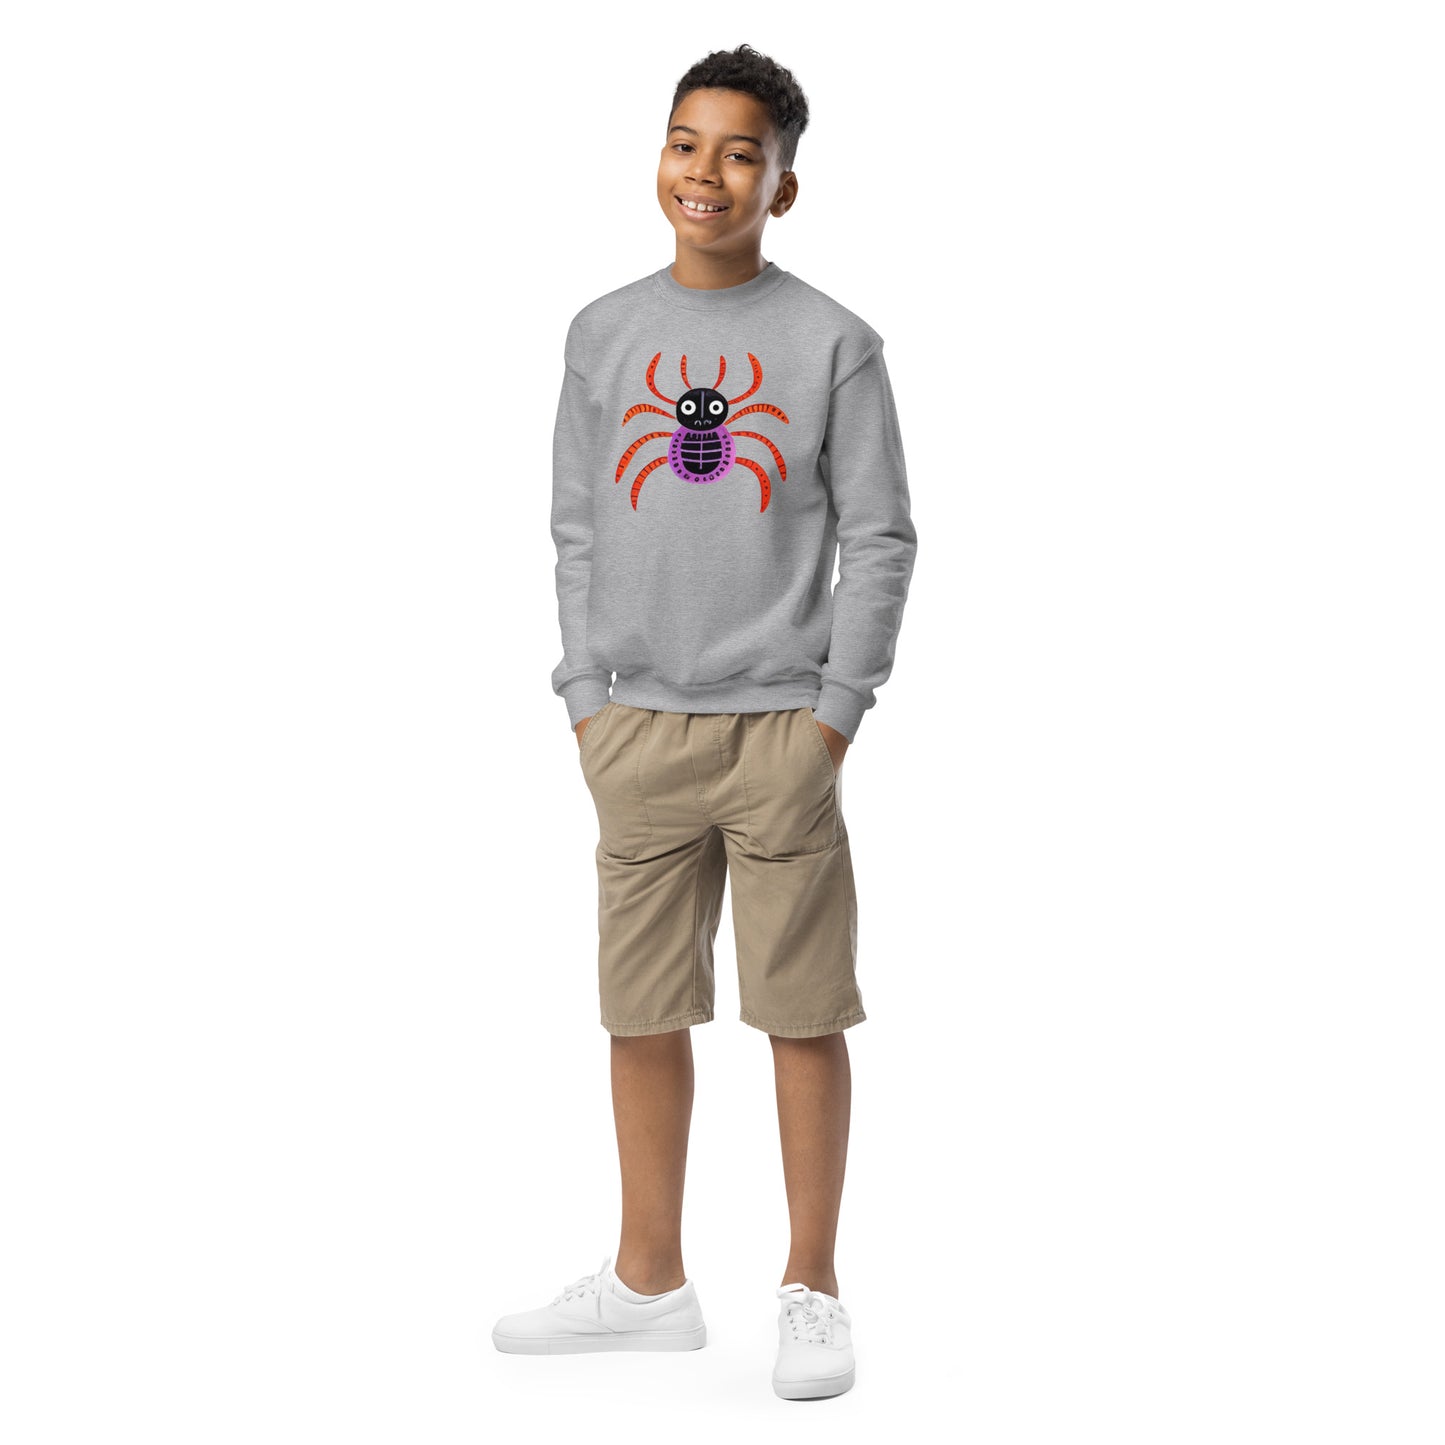 Striped Spider Critter #01 Youth crewneck sweatshirt